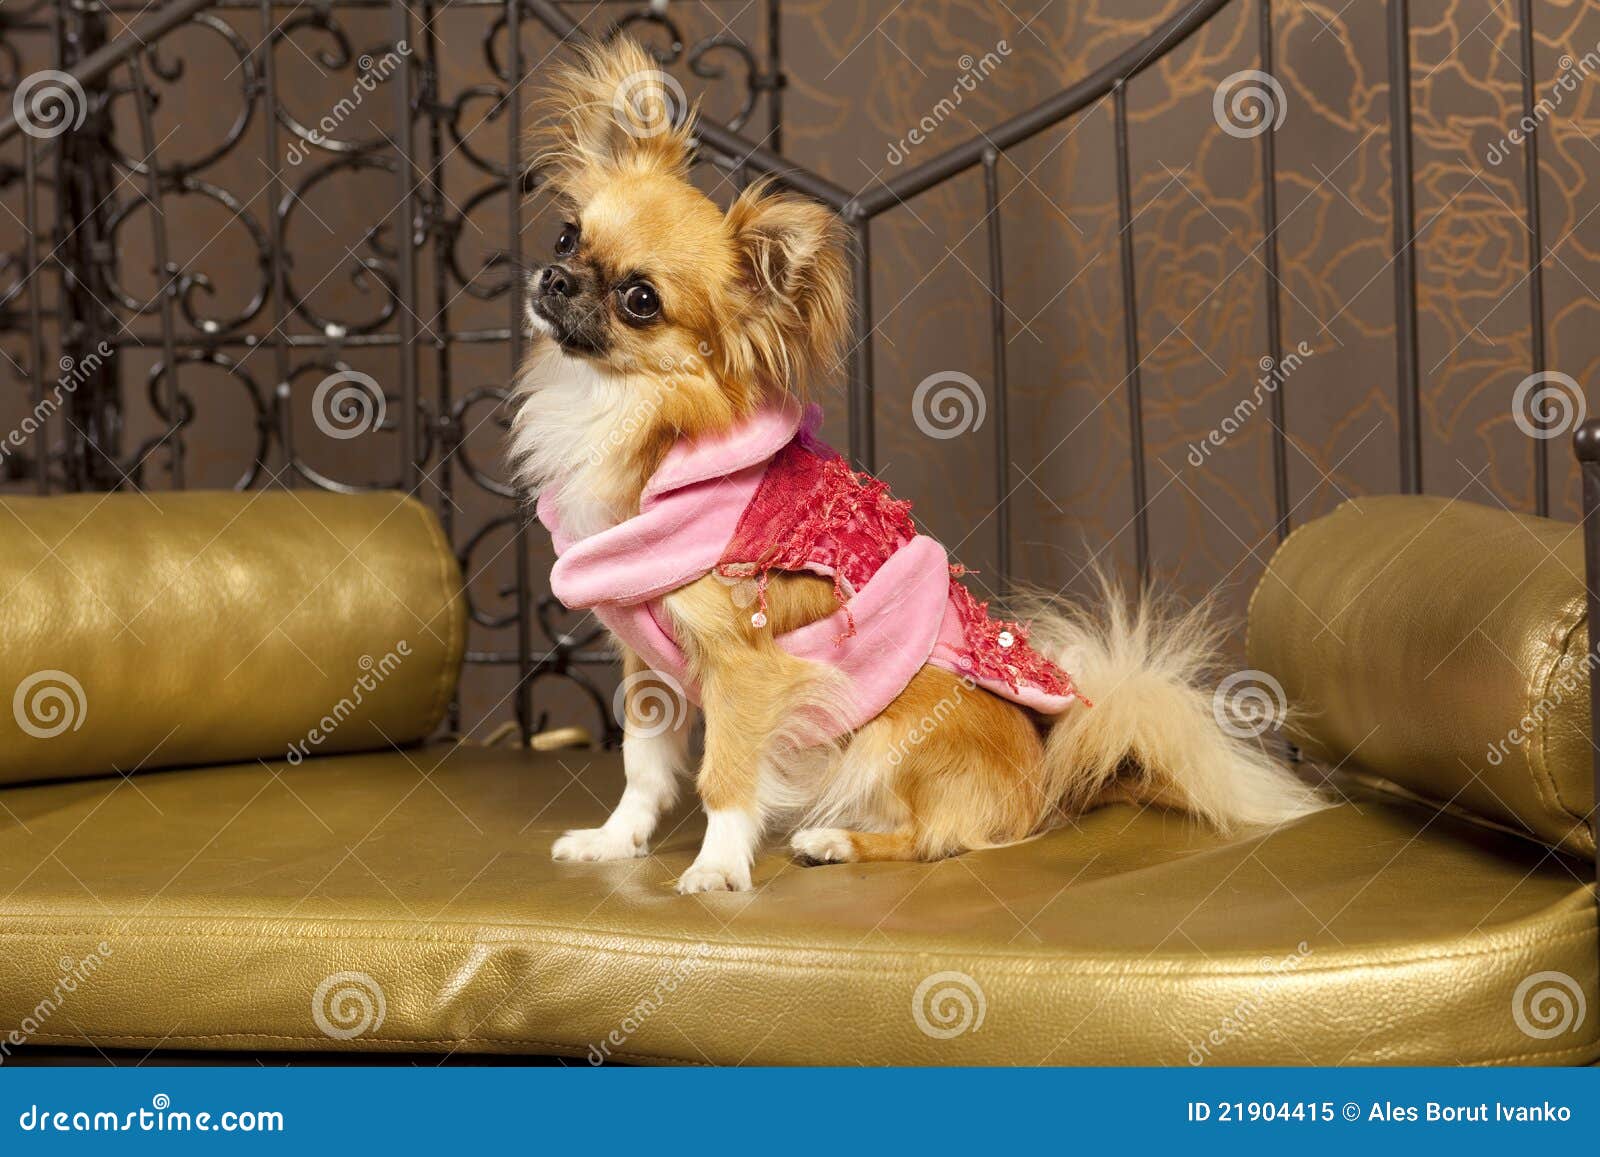 Netter Hund Kleidung einer in der rosaroten Art und Weise. Chihuahua in der roten und rosafarbenen Kleidung einer Art und Weise